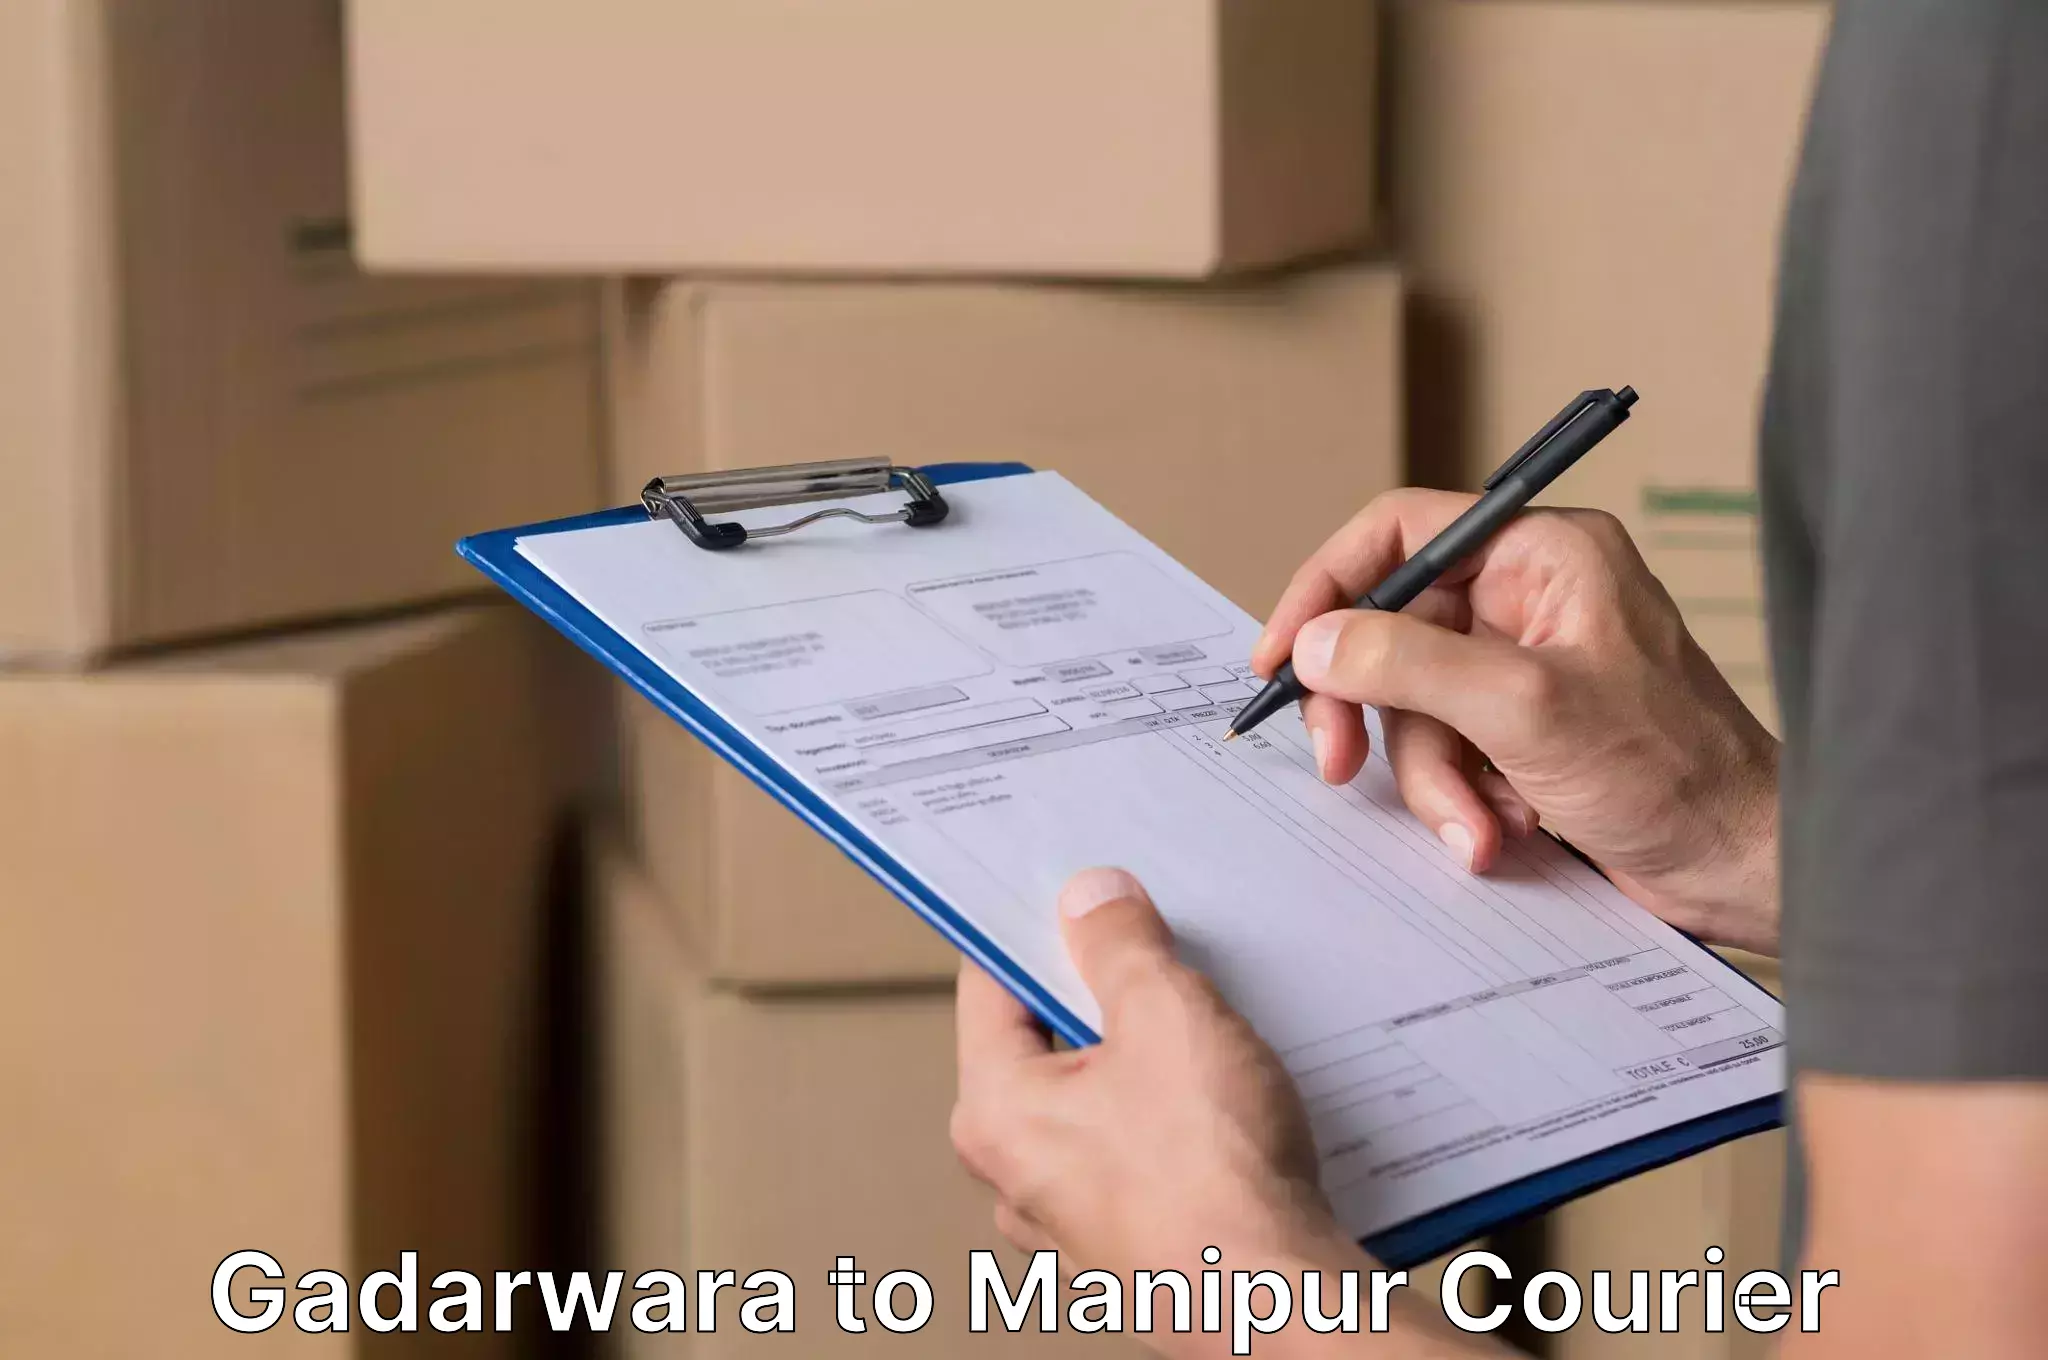 Stress-free furniture moving Gadarwara to Manipur